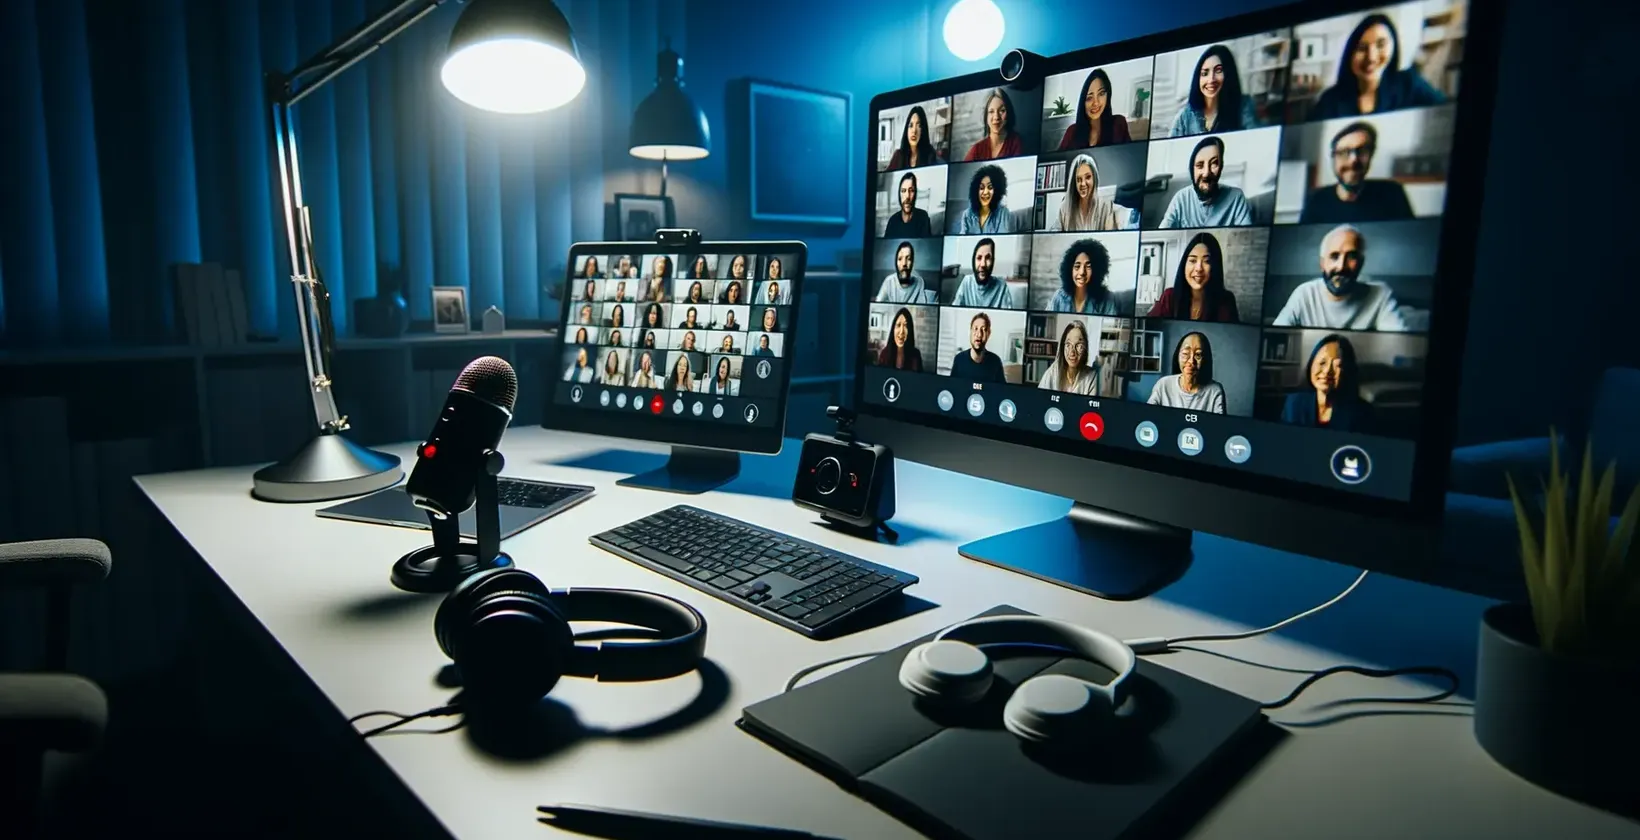 Podešavanje radnog stola sa dva monitora i mikrofonom za Microsoft Teams prepisivanja sastanaka.